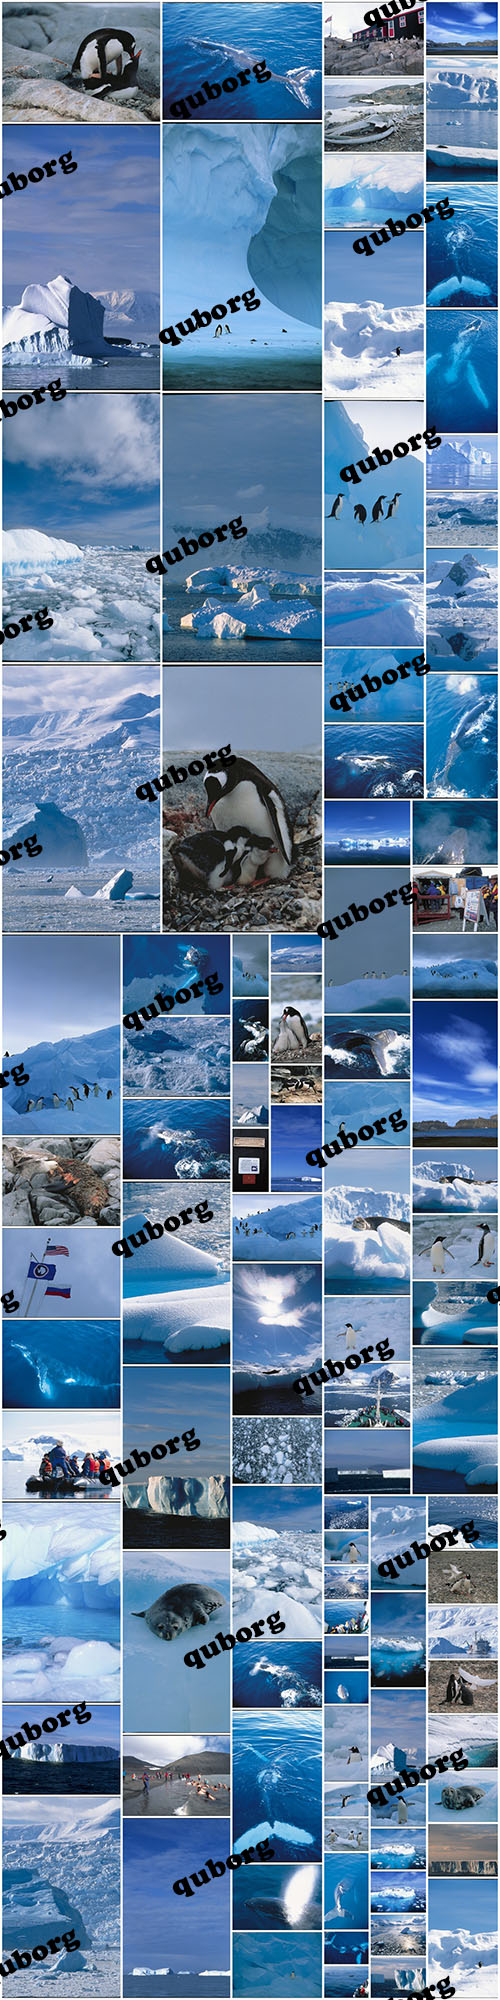 Stock Photos - Antarctica